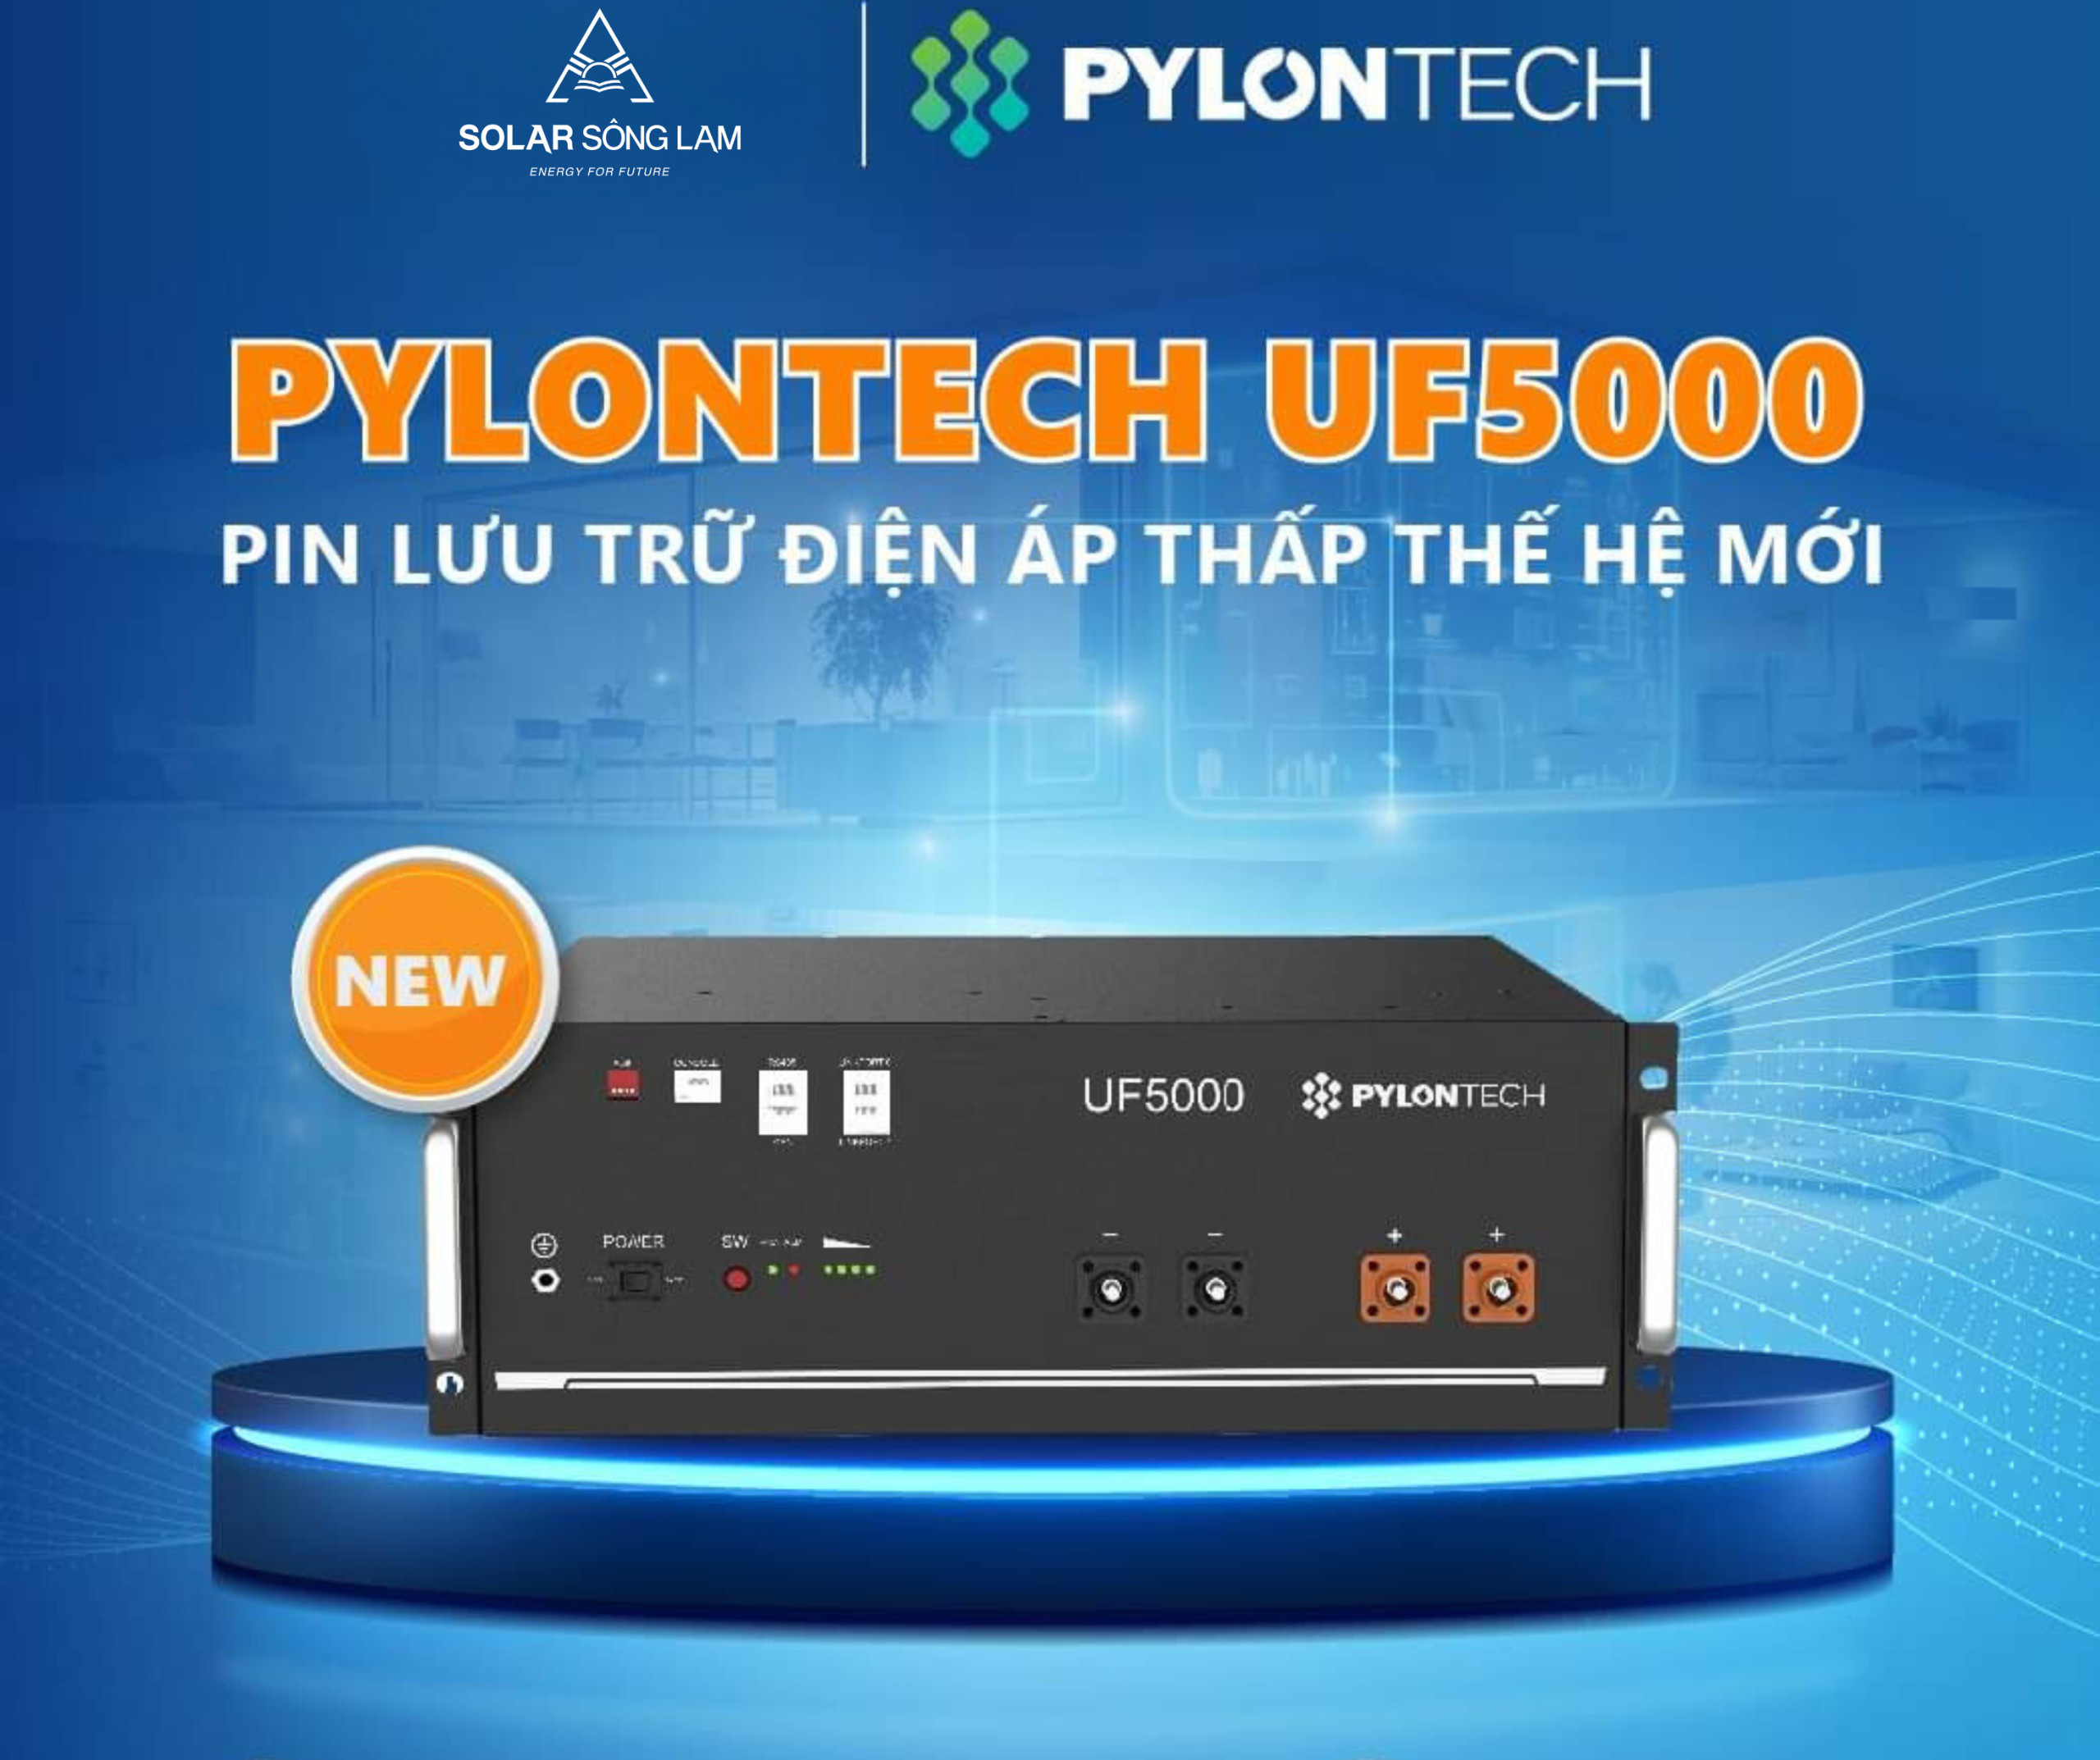 pylontech-uf5000-pin-luu-tru-dien-ap-thap-the-he-moi